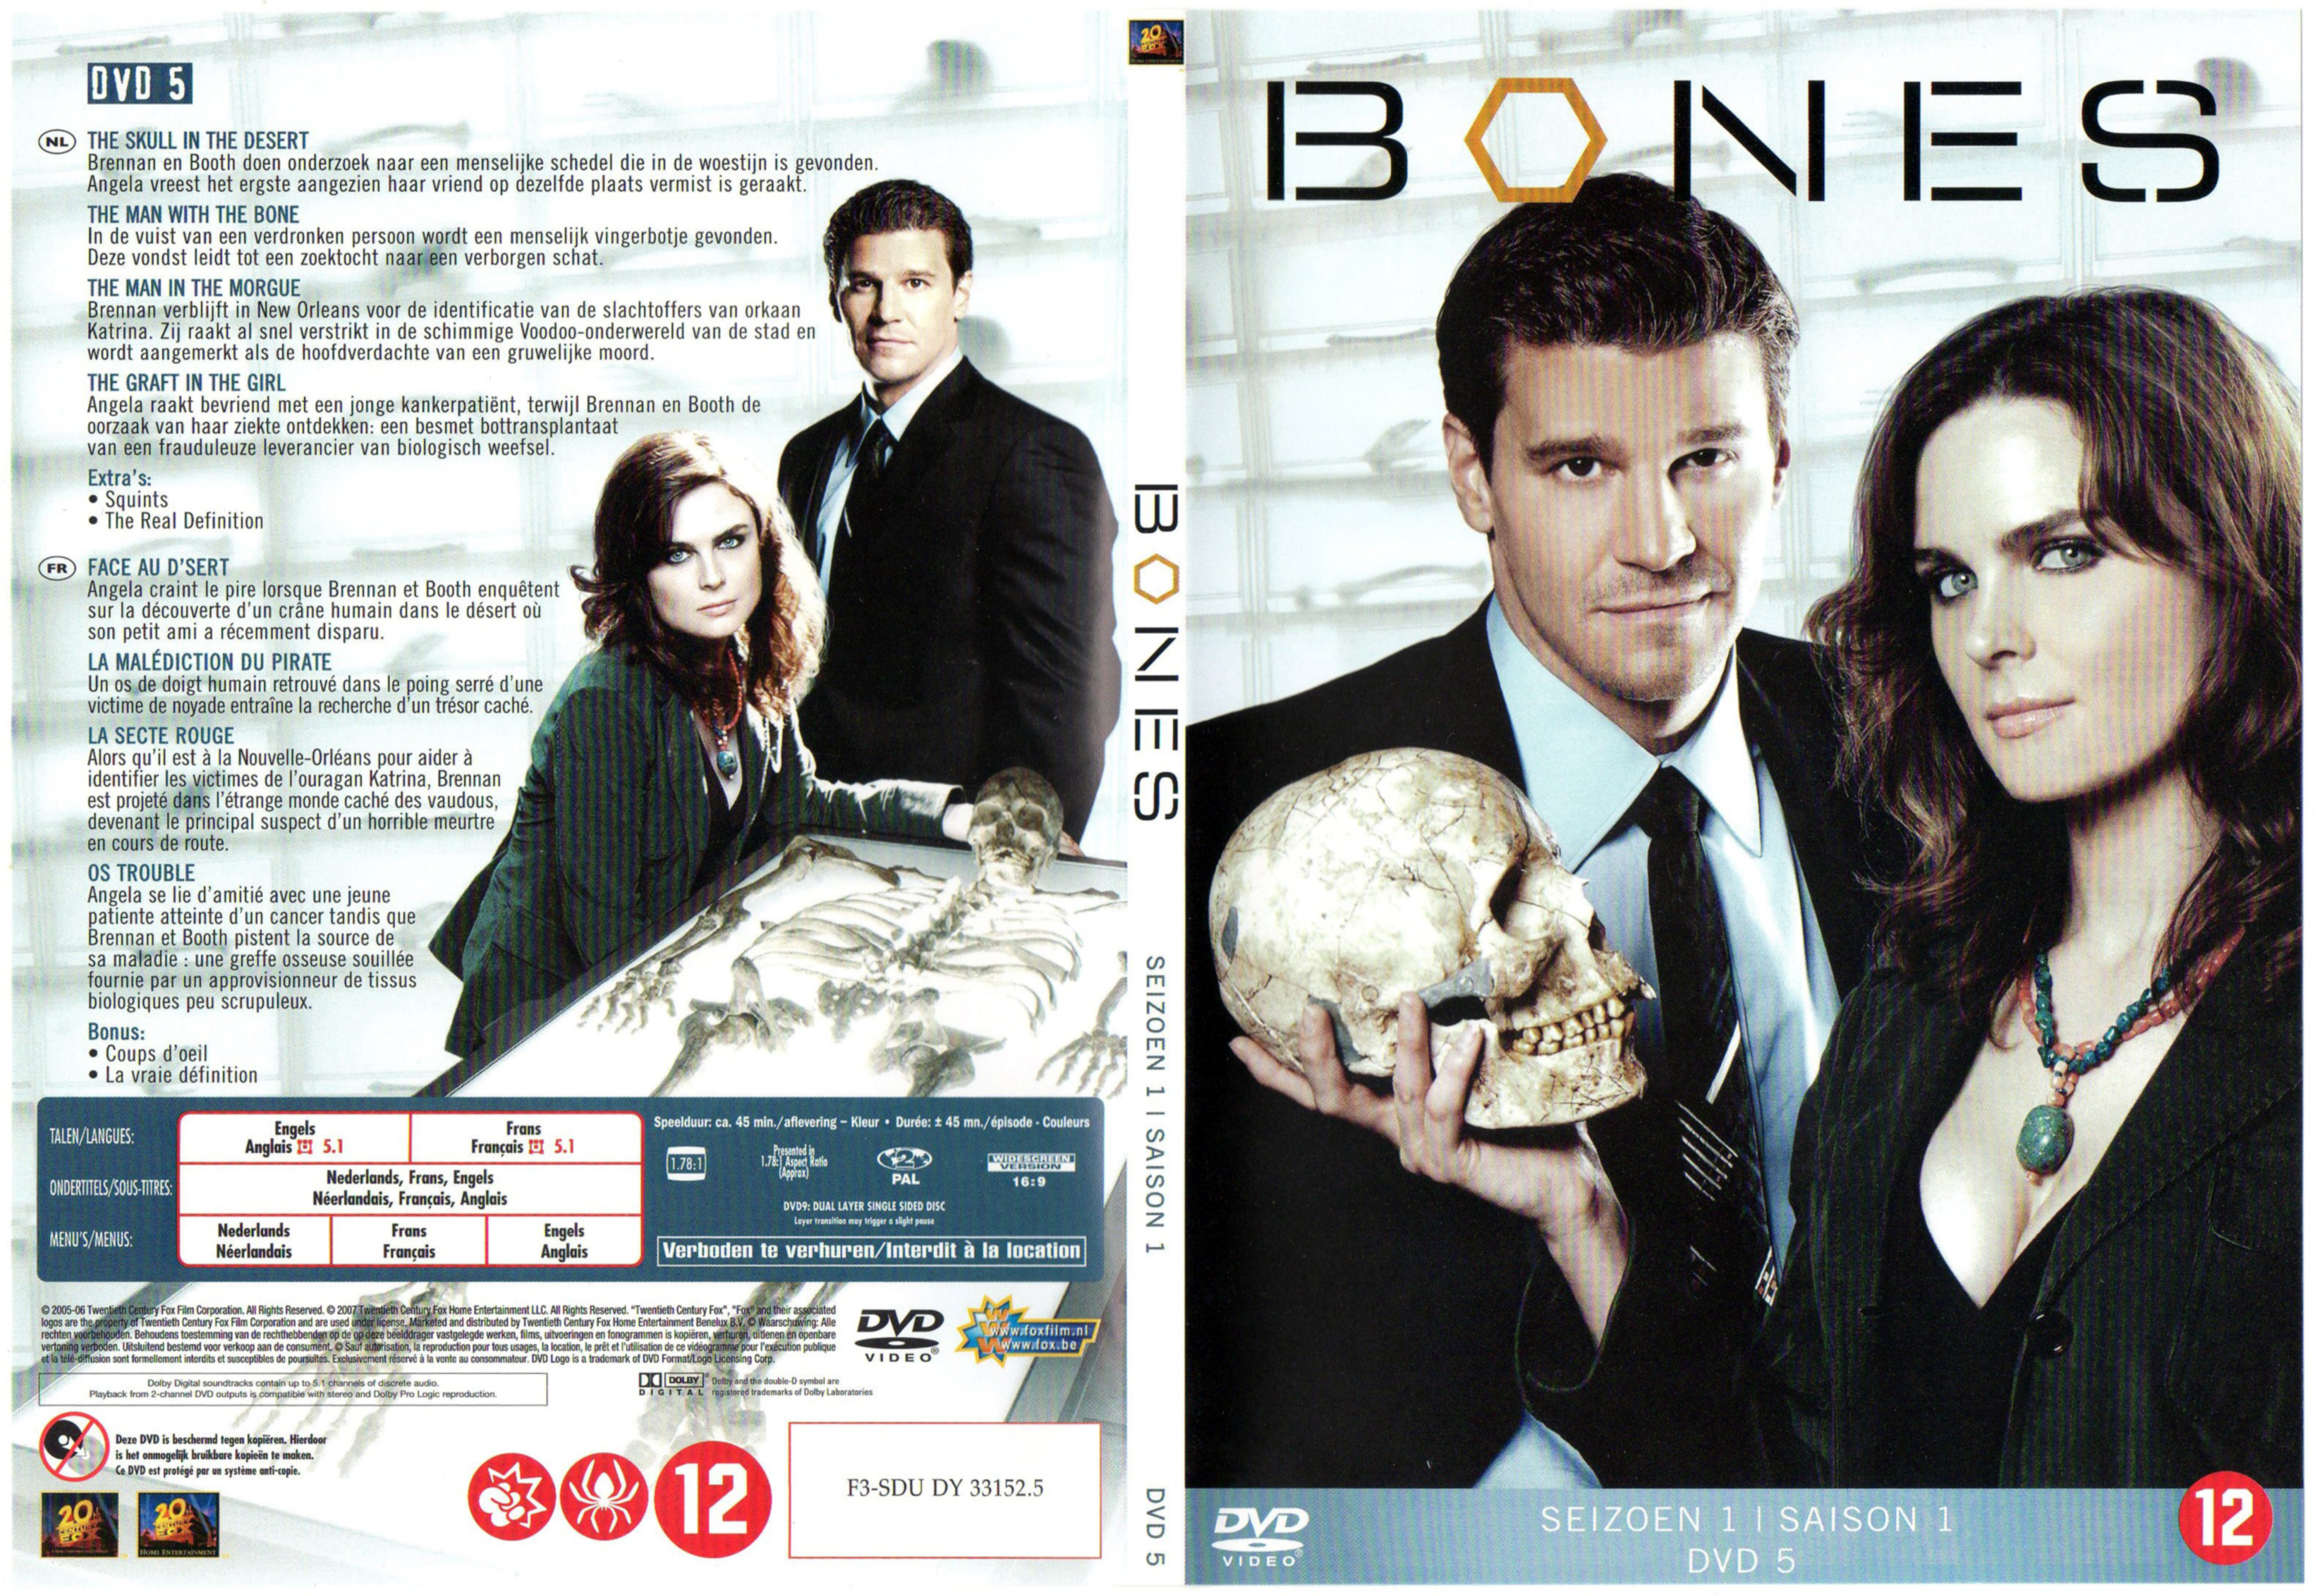 Jaquette DVD Bones Saison 1 DVD 5 v2